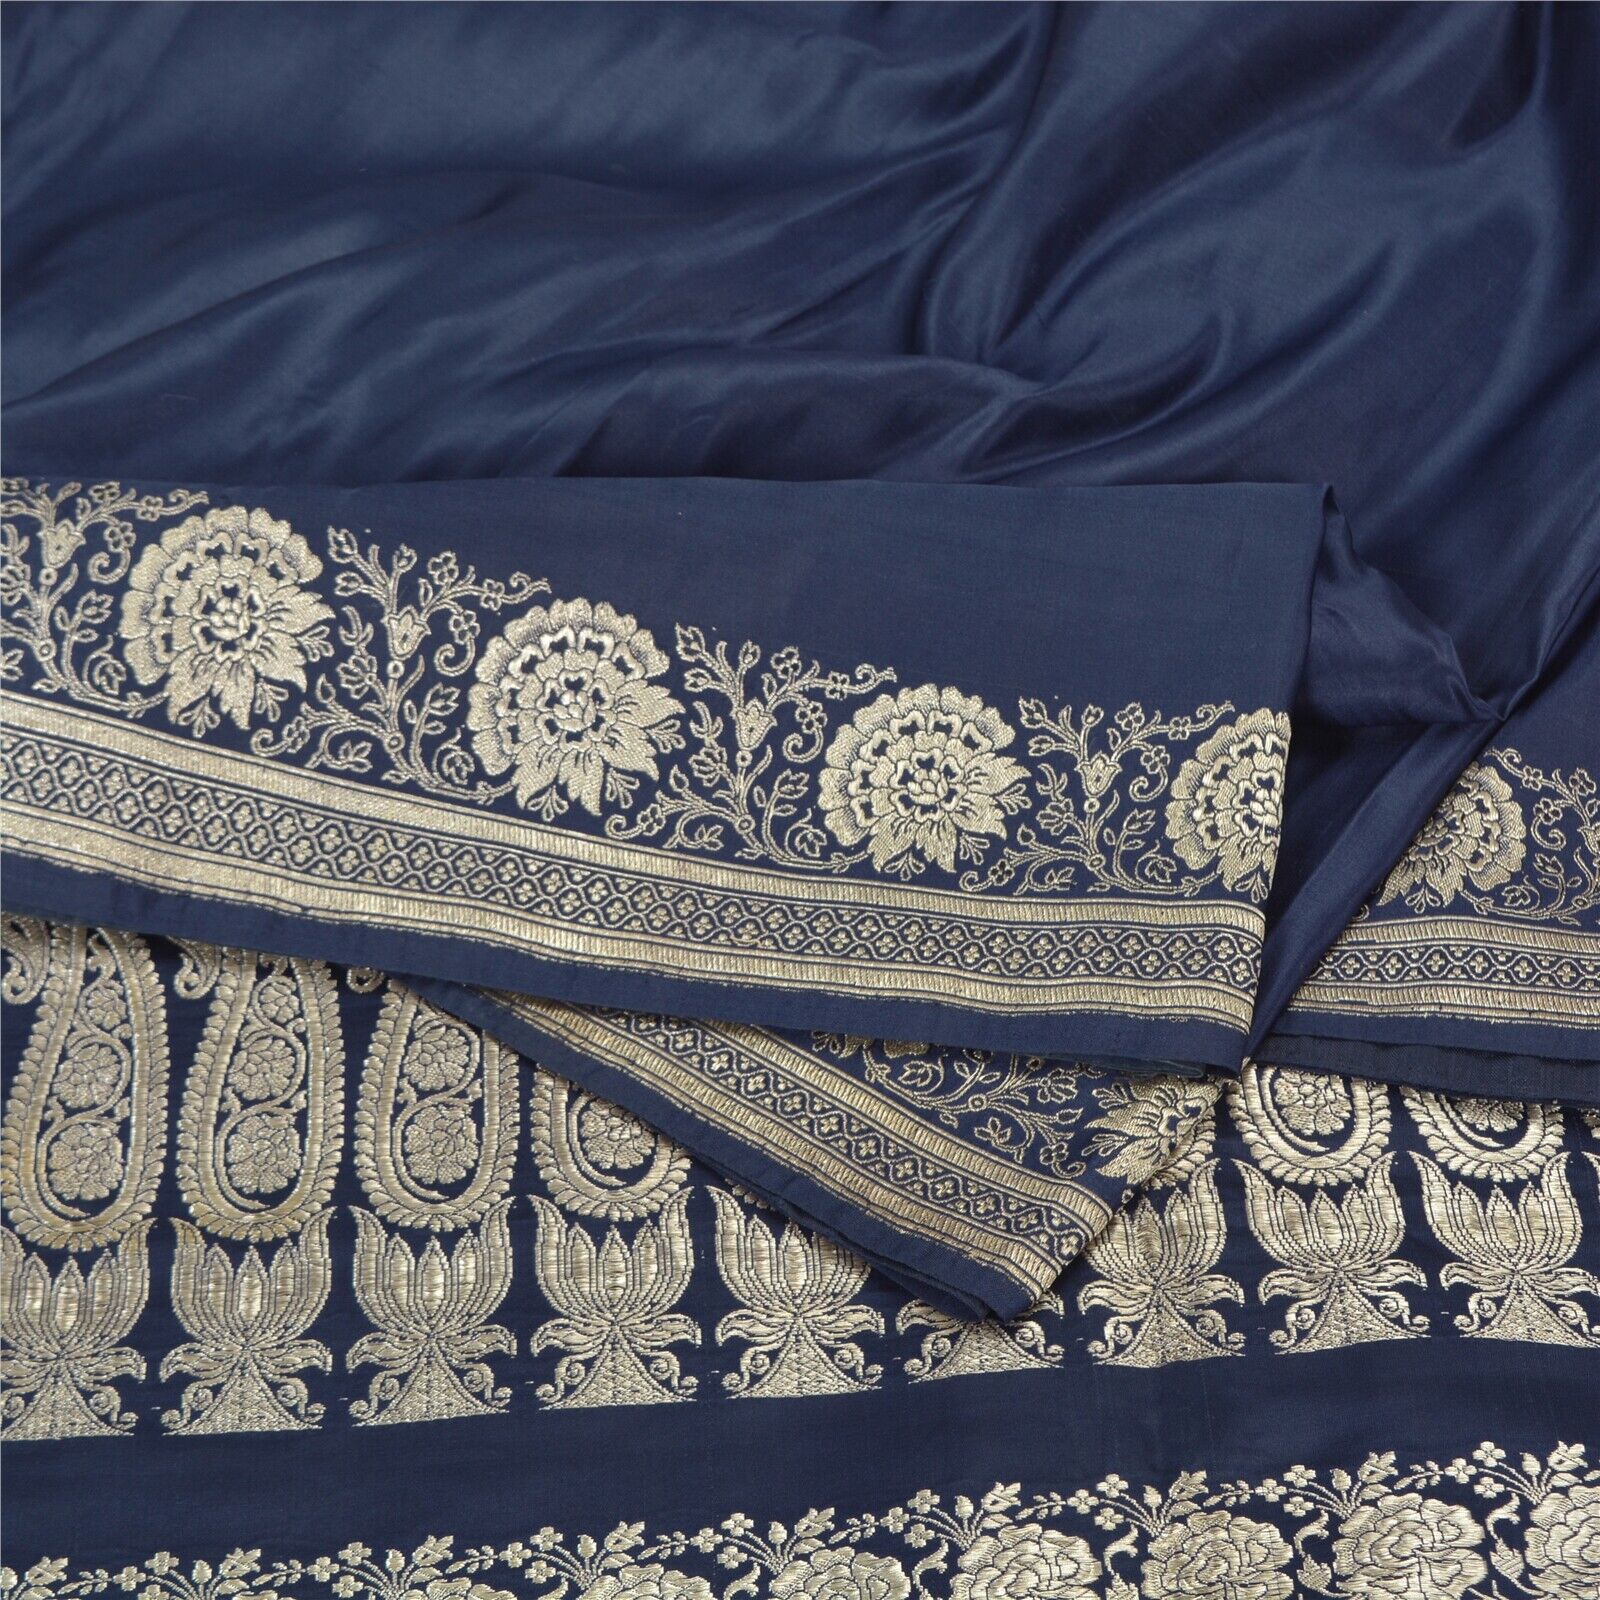 Sanskriti Vintage Blue Sarees Pure Satin Silk Woven Brocade/Banarasi Sari Fabric